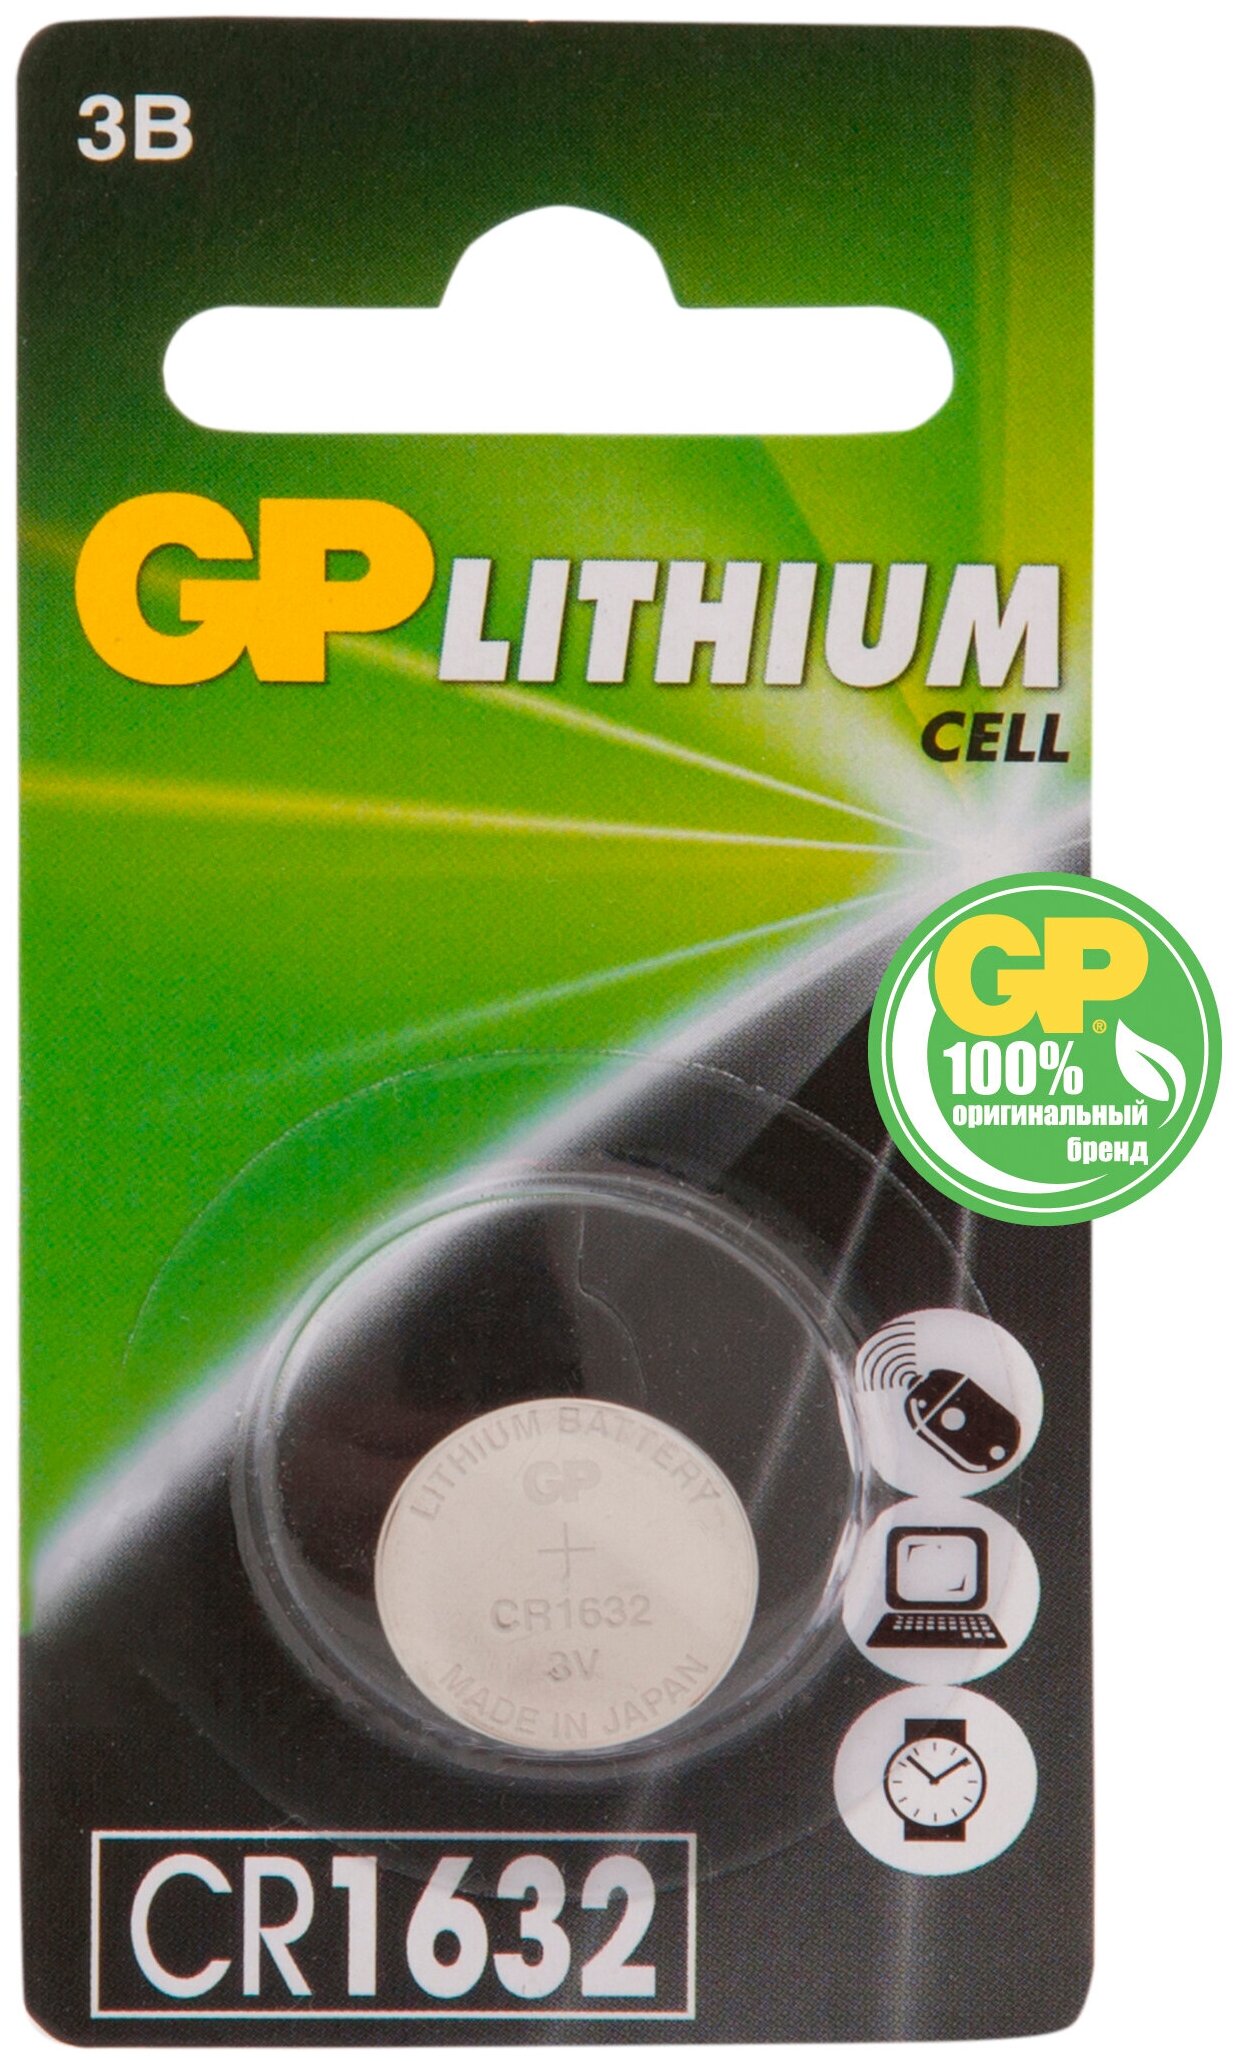 Элементы питания Батарея GP Lithium, CR1632, 3V, 1шт. (CR1632-7CR110/100/900)